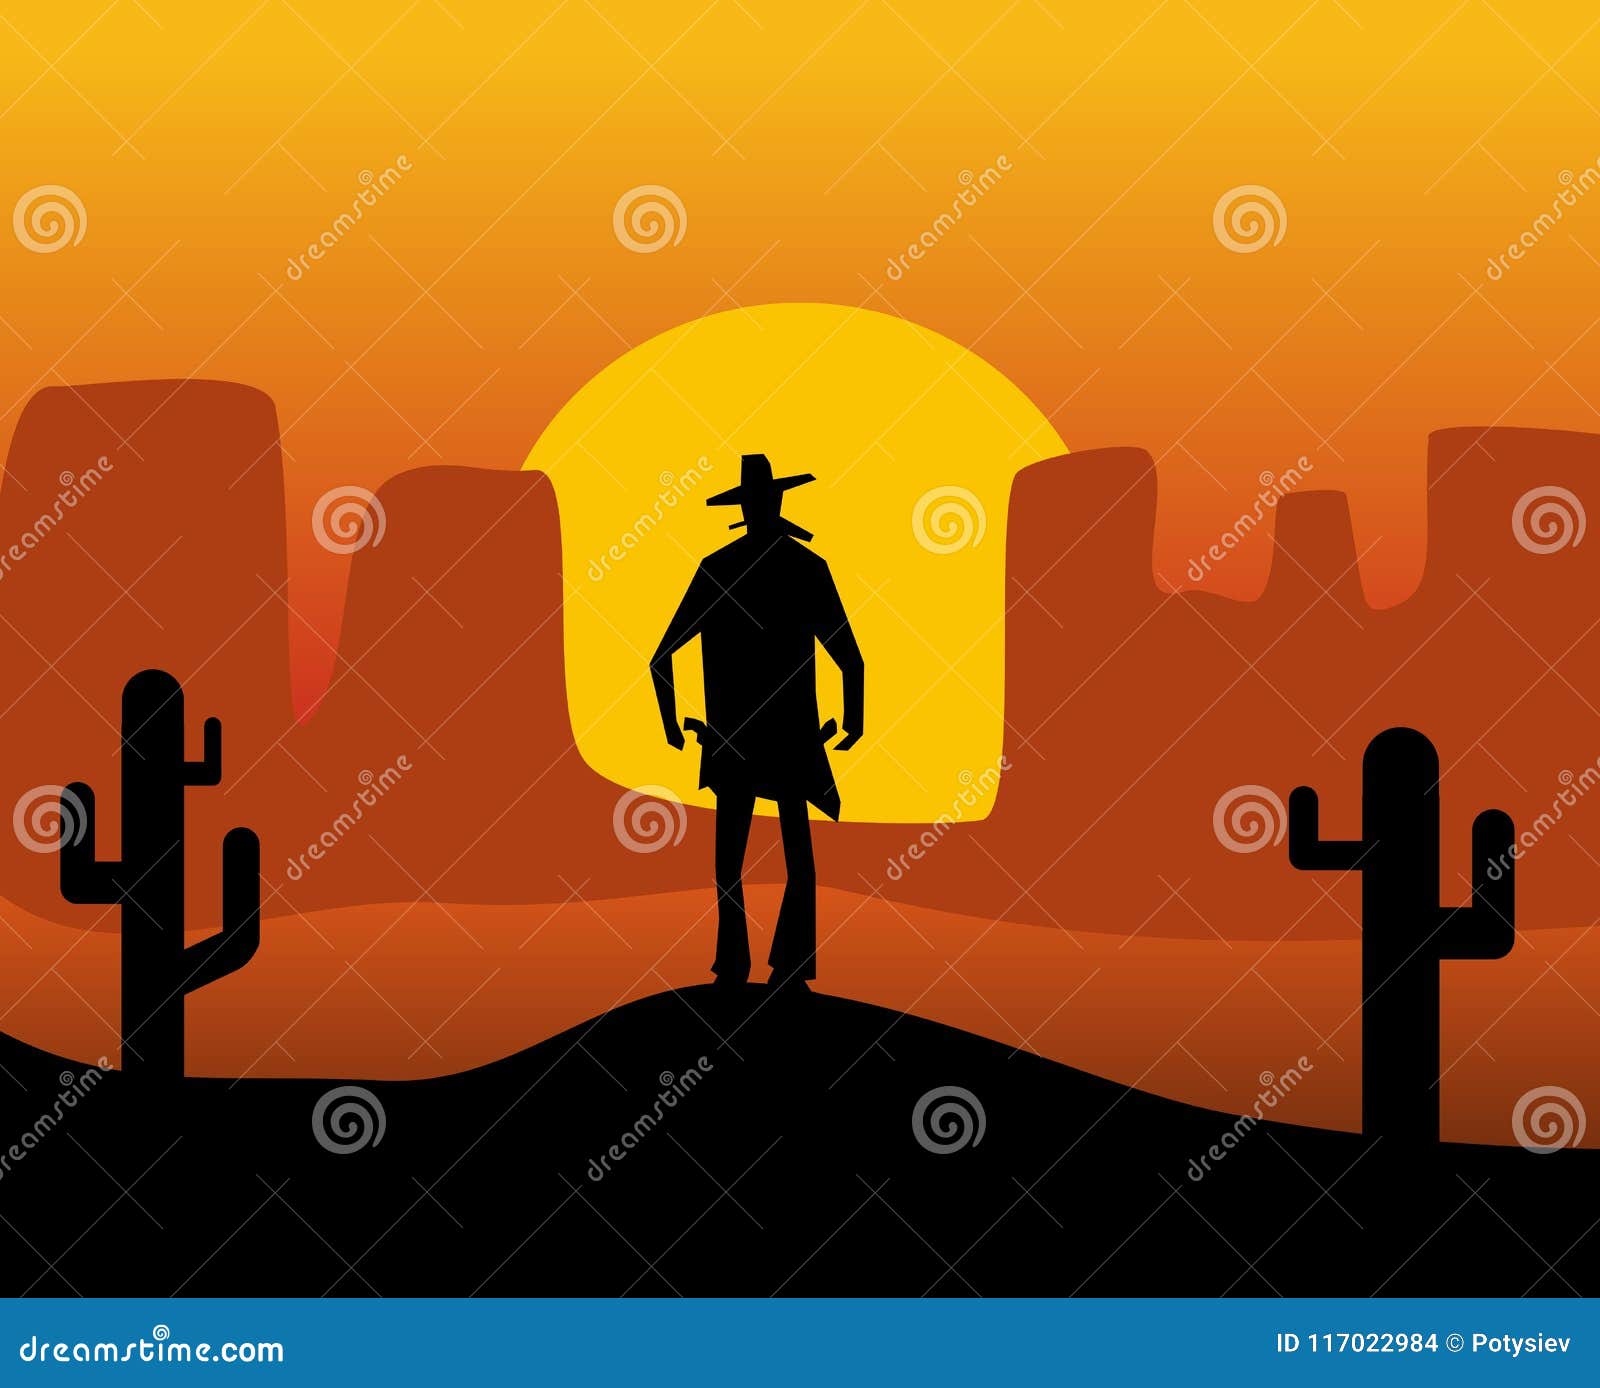 wild west gunslinger. background the desert.